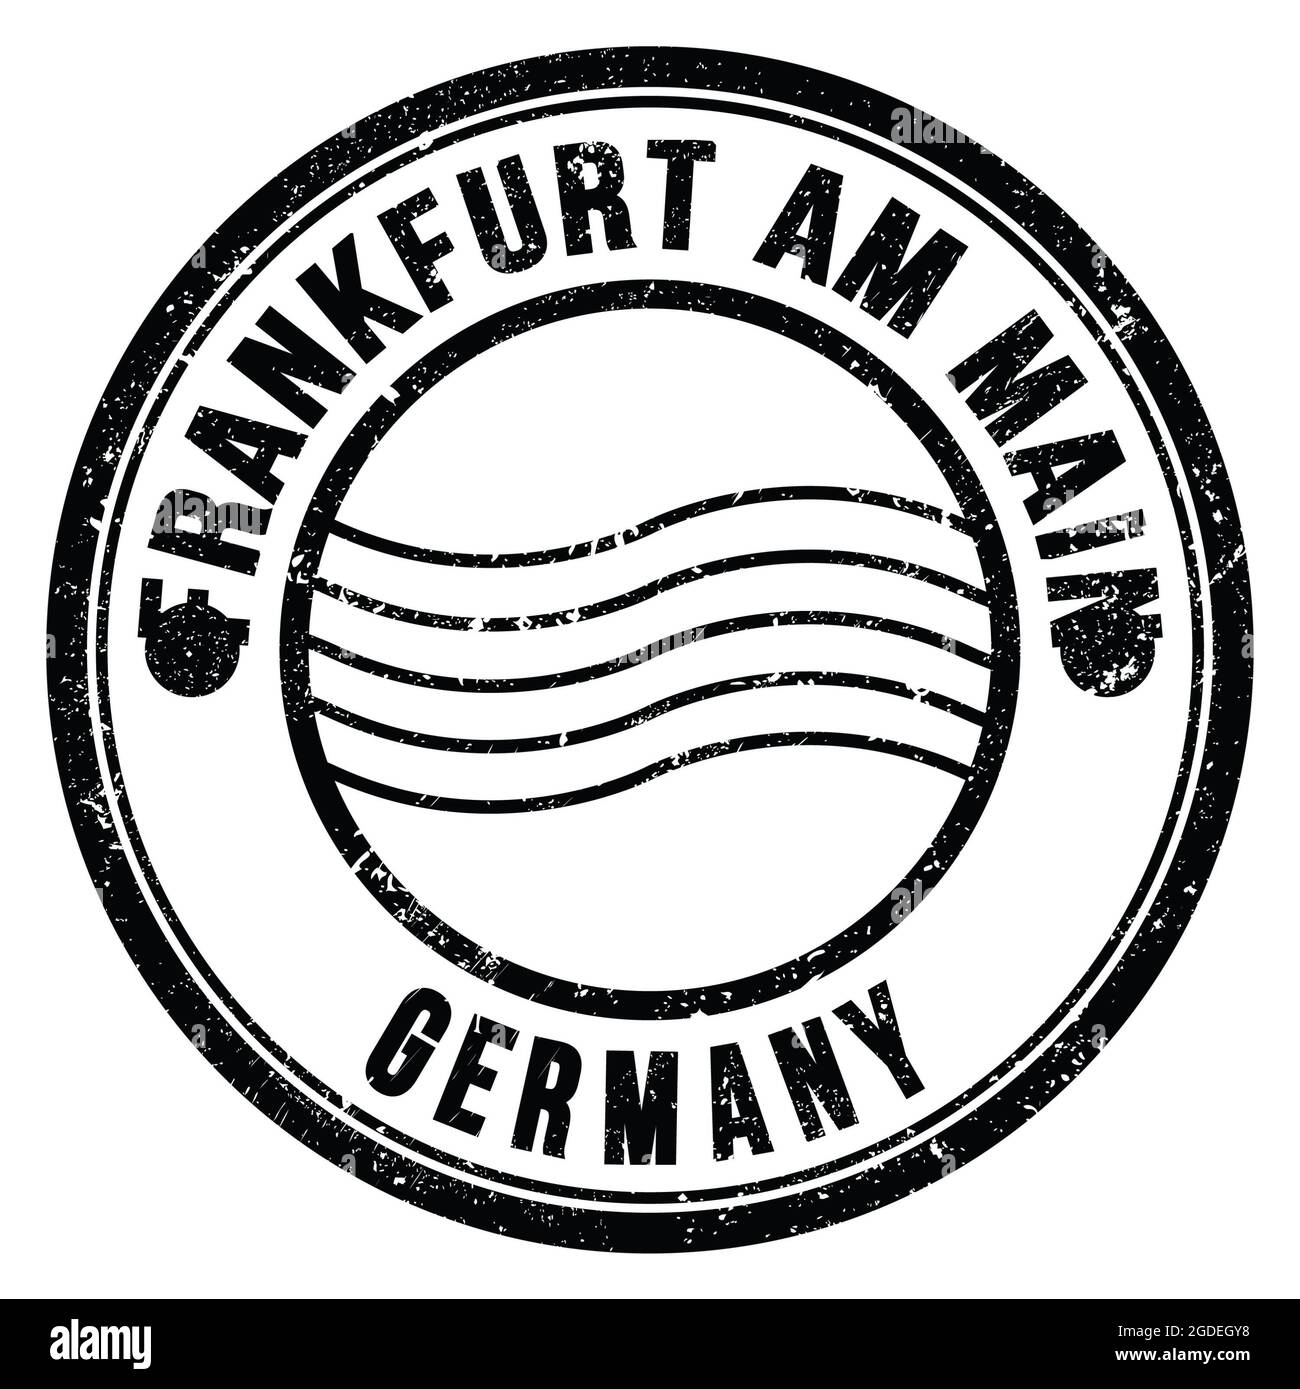 FRANCFORT AM MAIN - ALLEMAGNE, mots écrits sur le timbre postal rond noir Banque D'Images